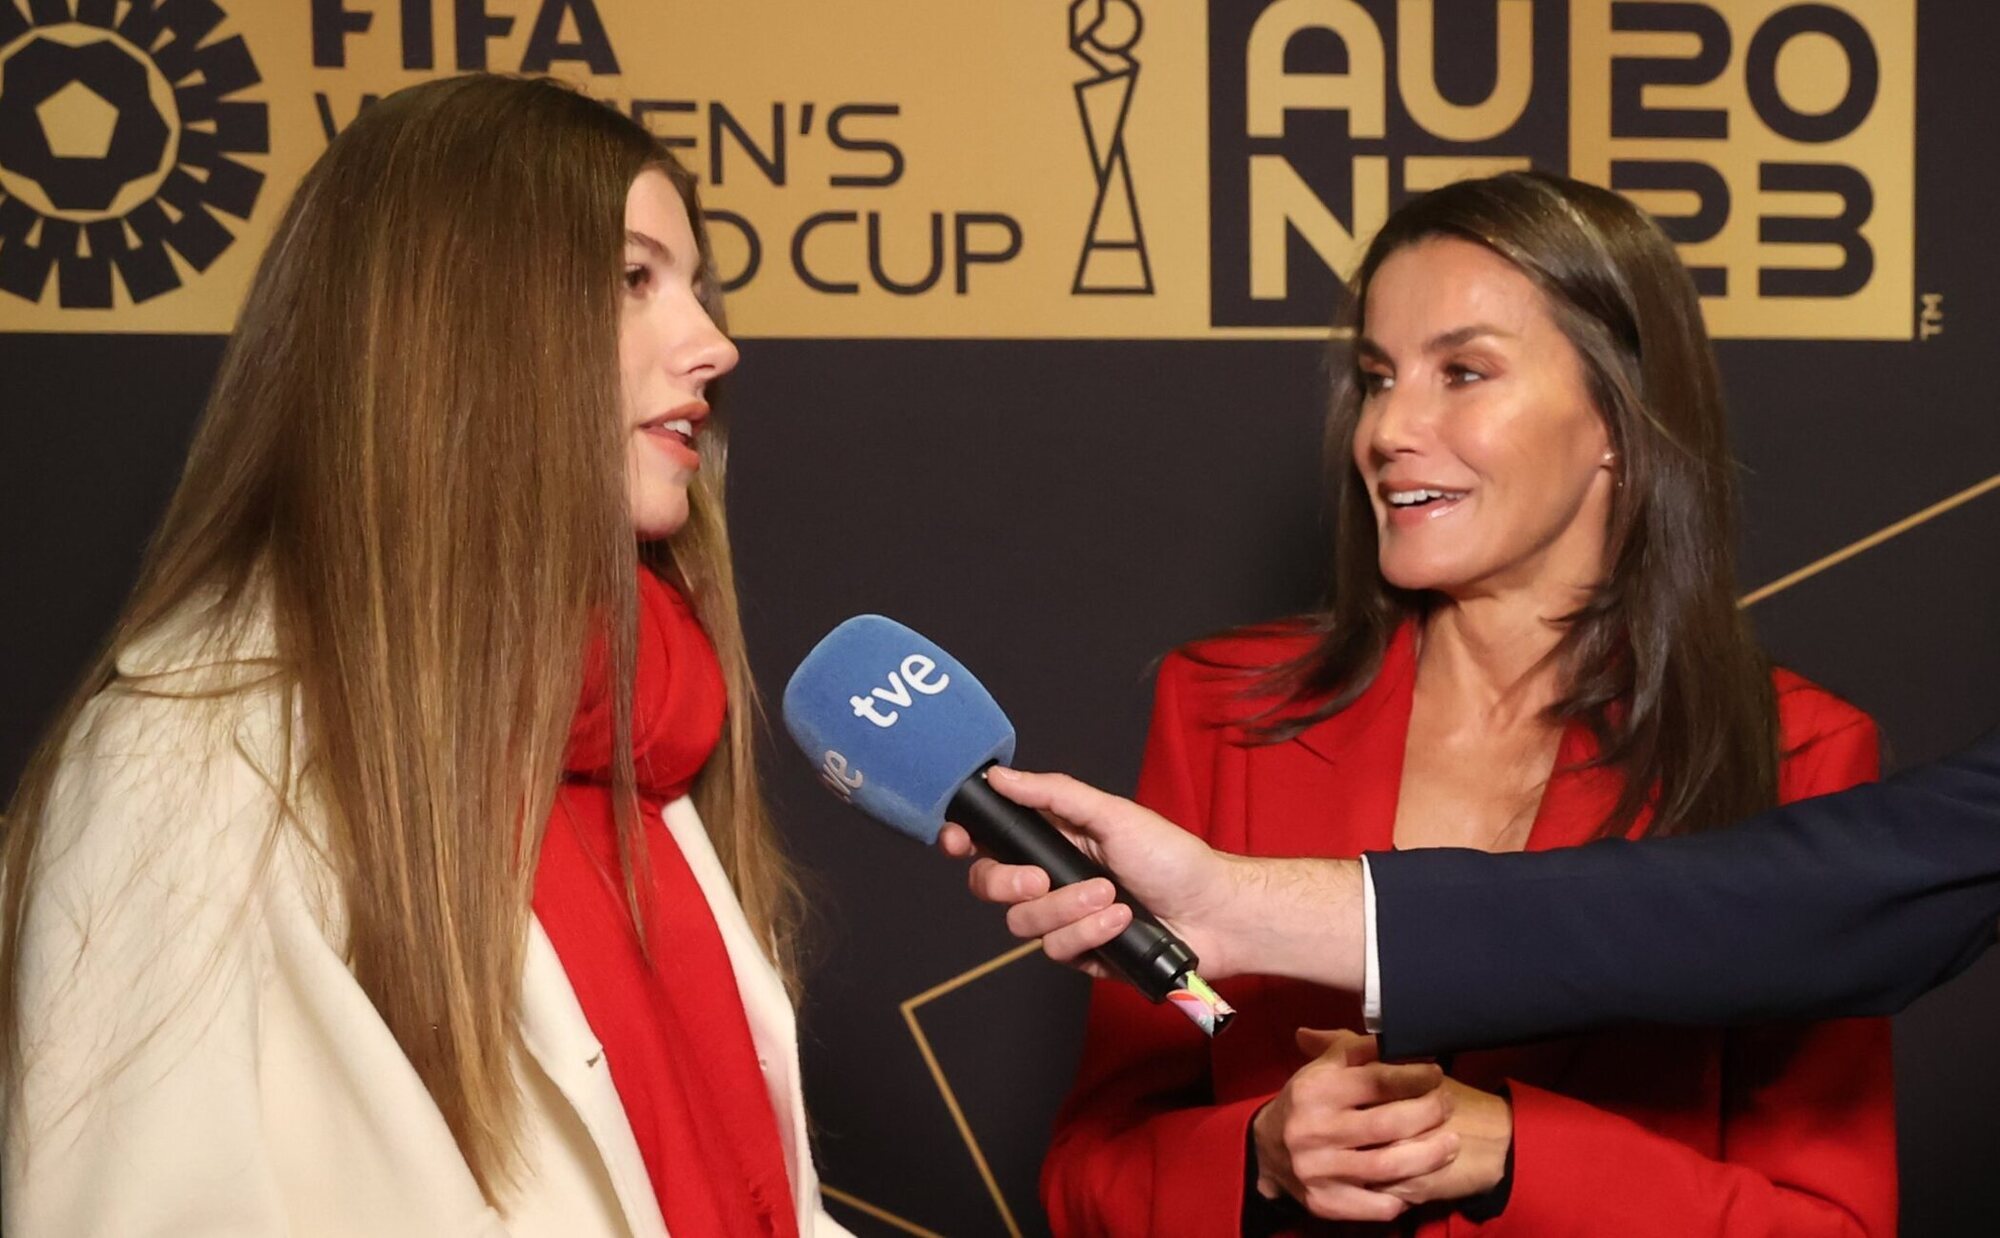 La Infanta Sofía habla por primera vez en televisión en la final del Mundial de Fútbol Femenino apoyada por la Reina Letizia